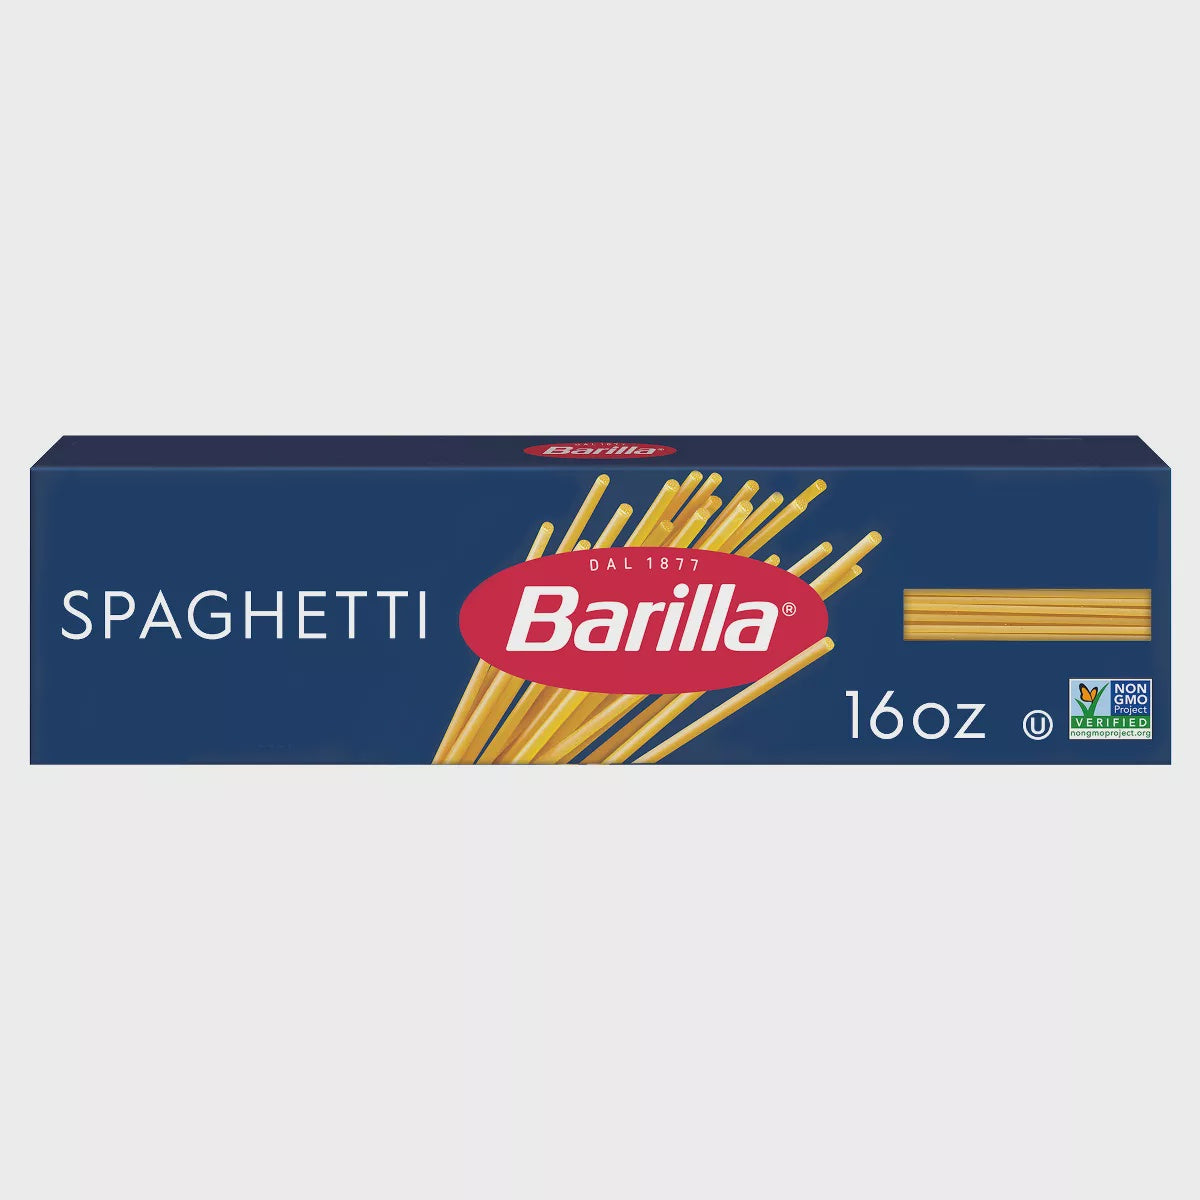 Barilla Spaghetti 16oz